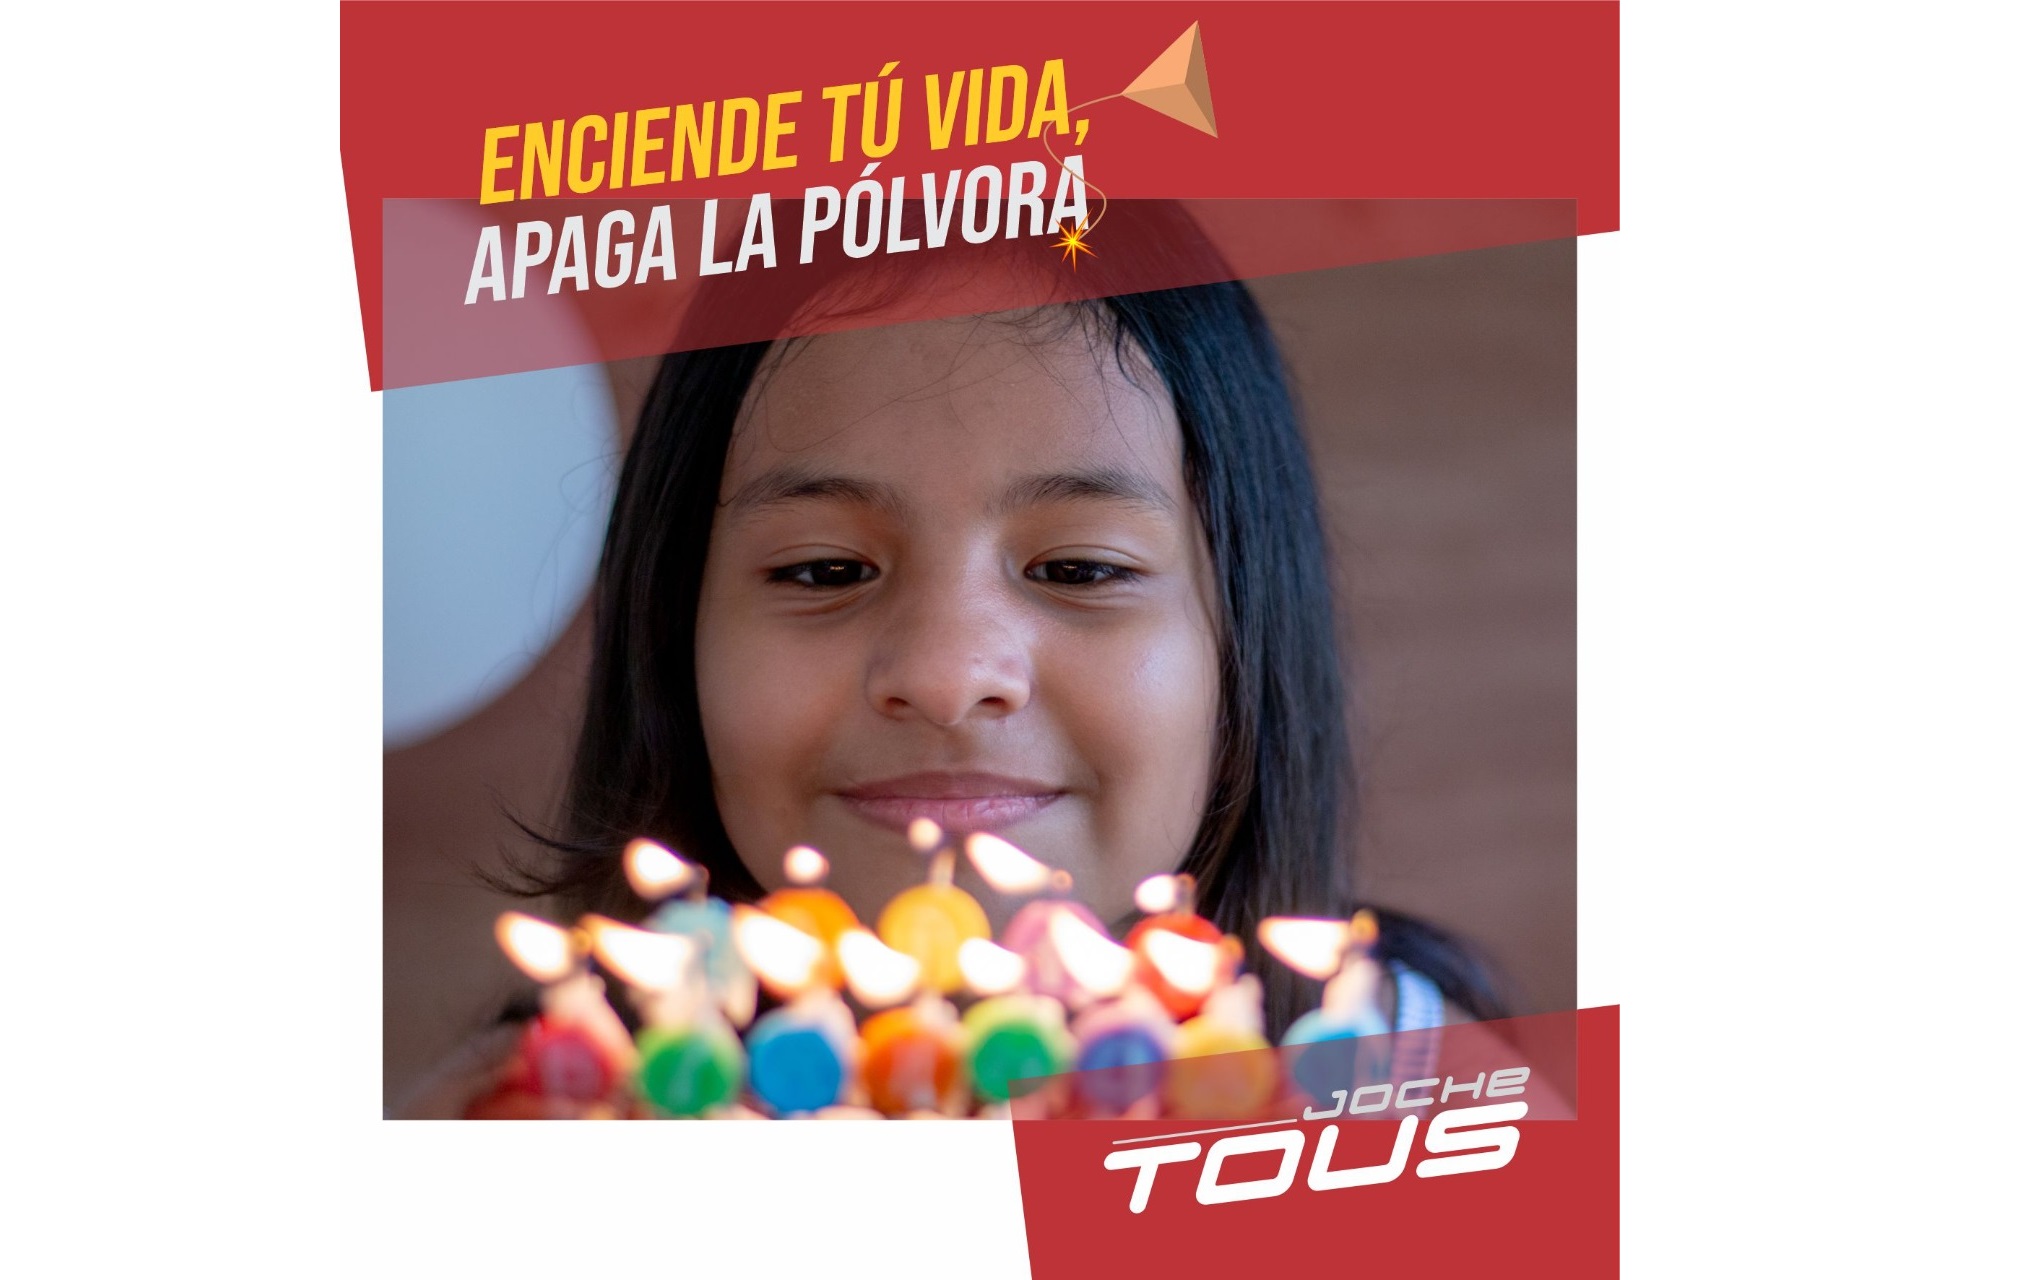 Joche Tous lanza campaña para evitar niños quemados con pólvora